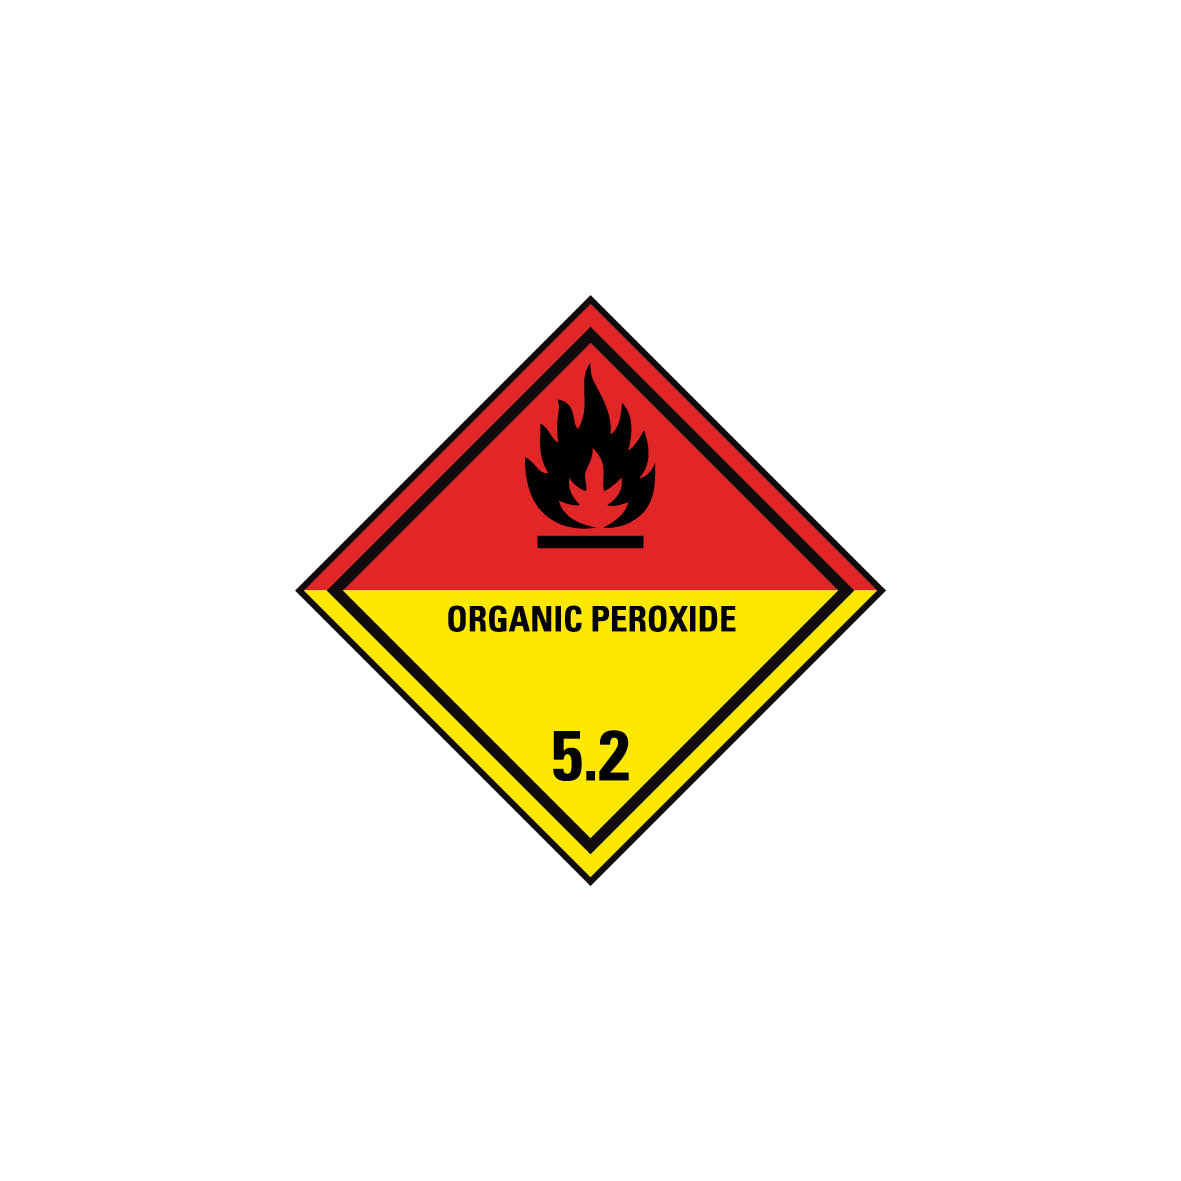 Gefahrgut Kl. 5.2, Organische Peroxide 5.0117.1, Oxidizing agent